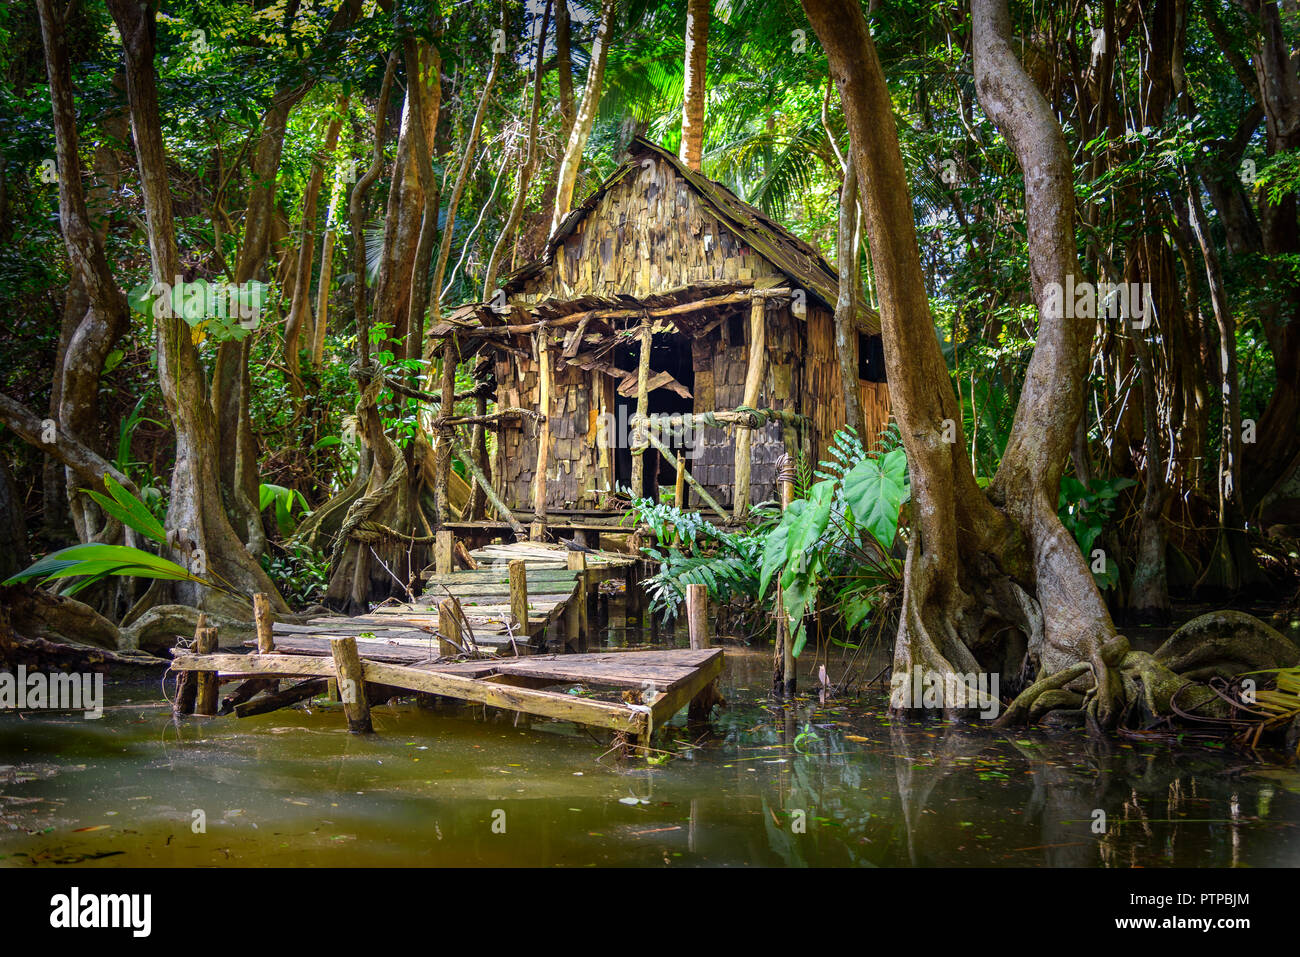 Abitacolo nella foresta di mangrovie e sulle rive di un fiume presso il fiume indiano in Dominica, casa è utilizzato in Pirati dei Caraibi film come Calypso's house. Foto Stock